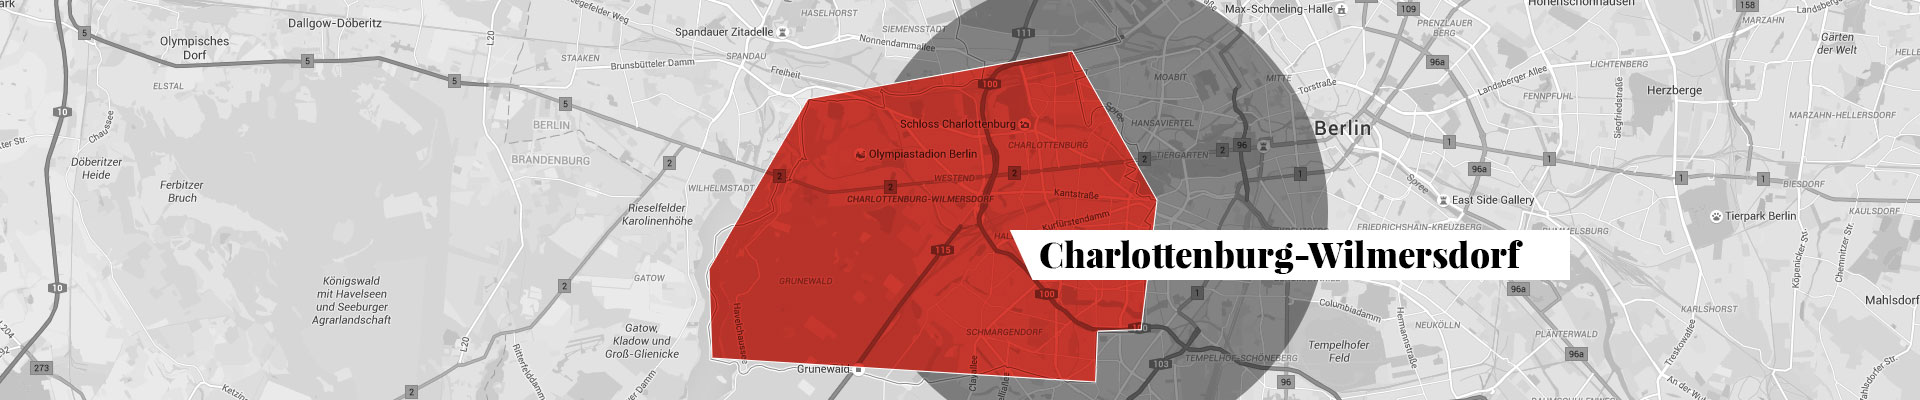 Charlottenburg-Wilmersdorf plan